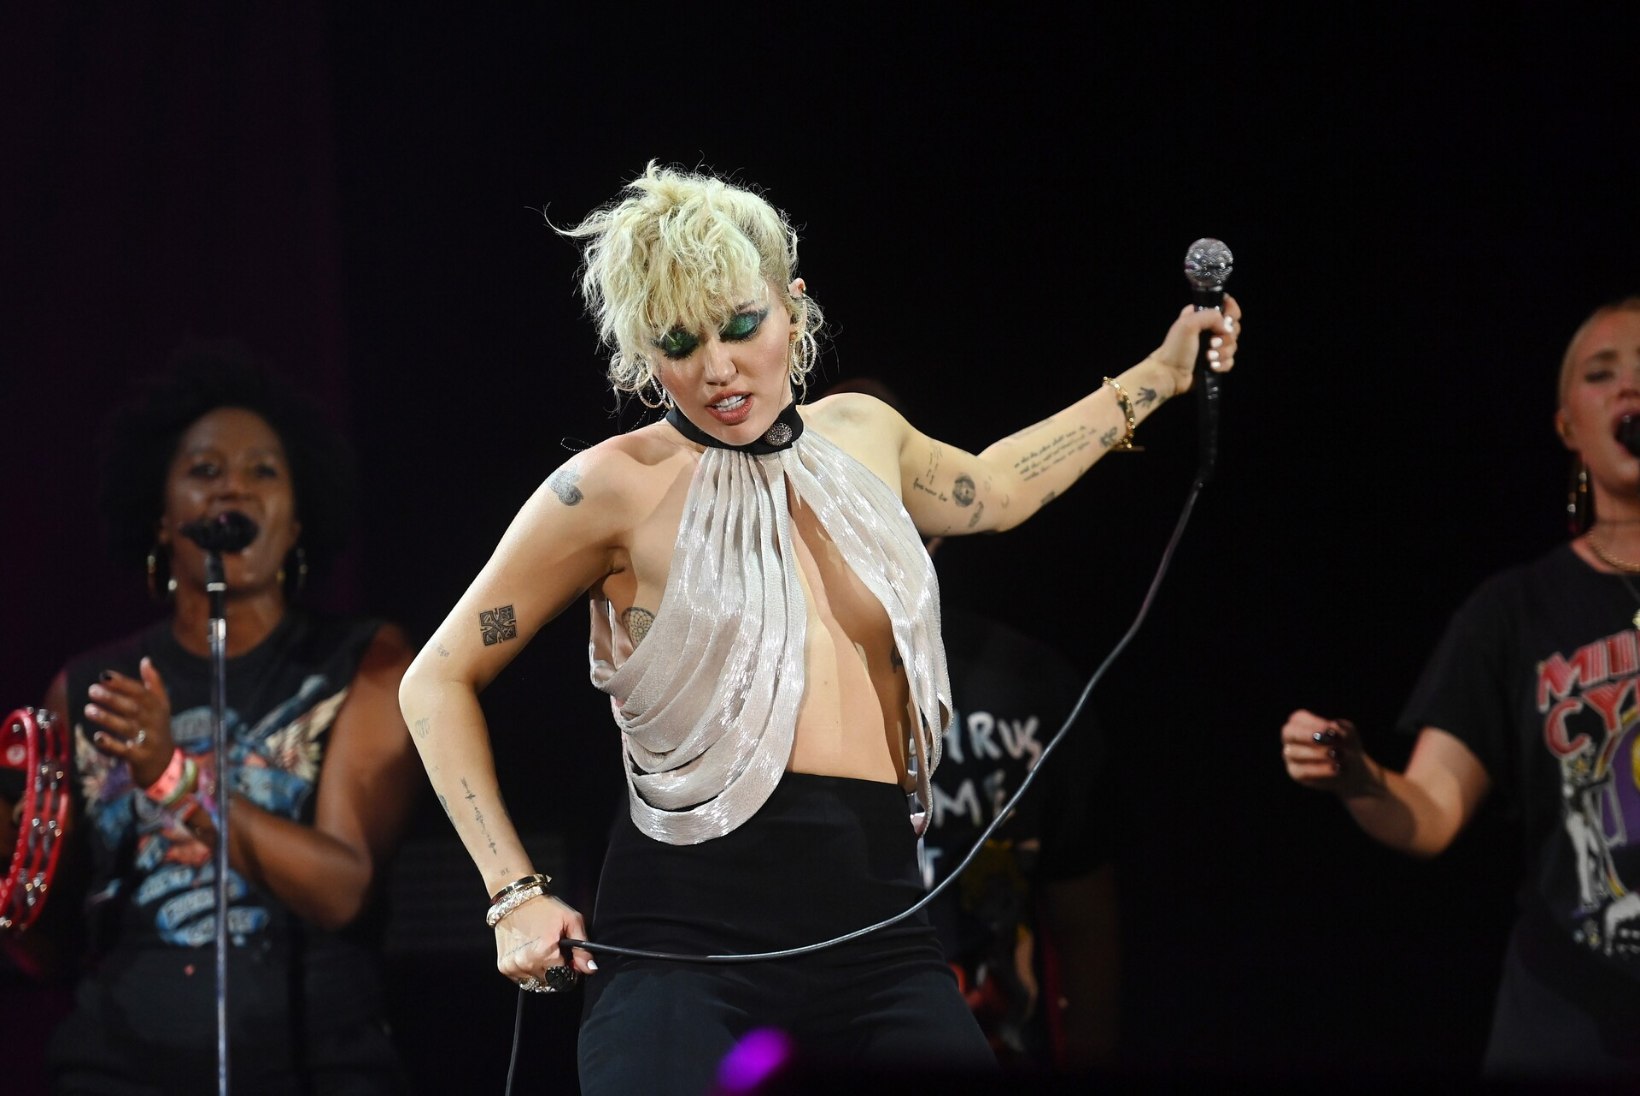 OH SA TULINE JUTT! Miley Cyruse esinemiskostüüm andis uue aasta esimestel minutitel pingele järele